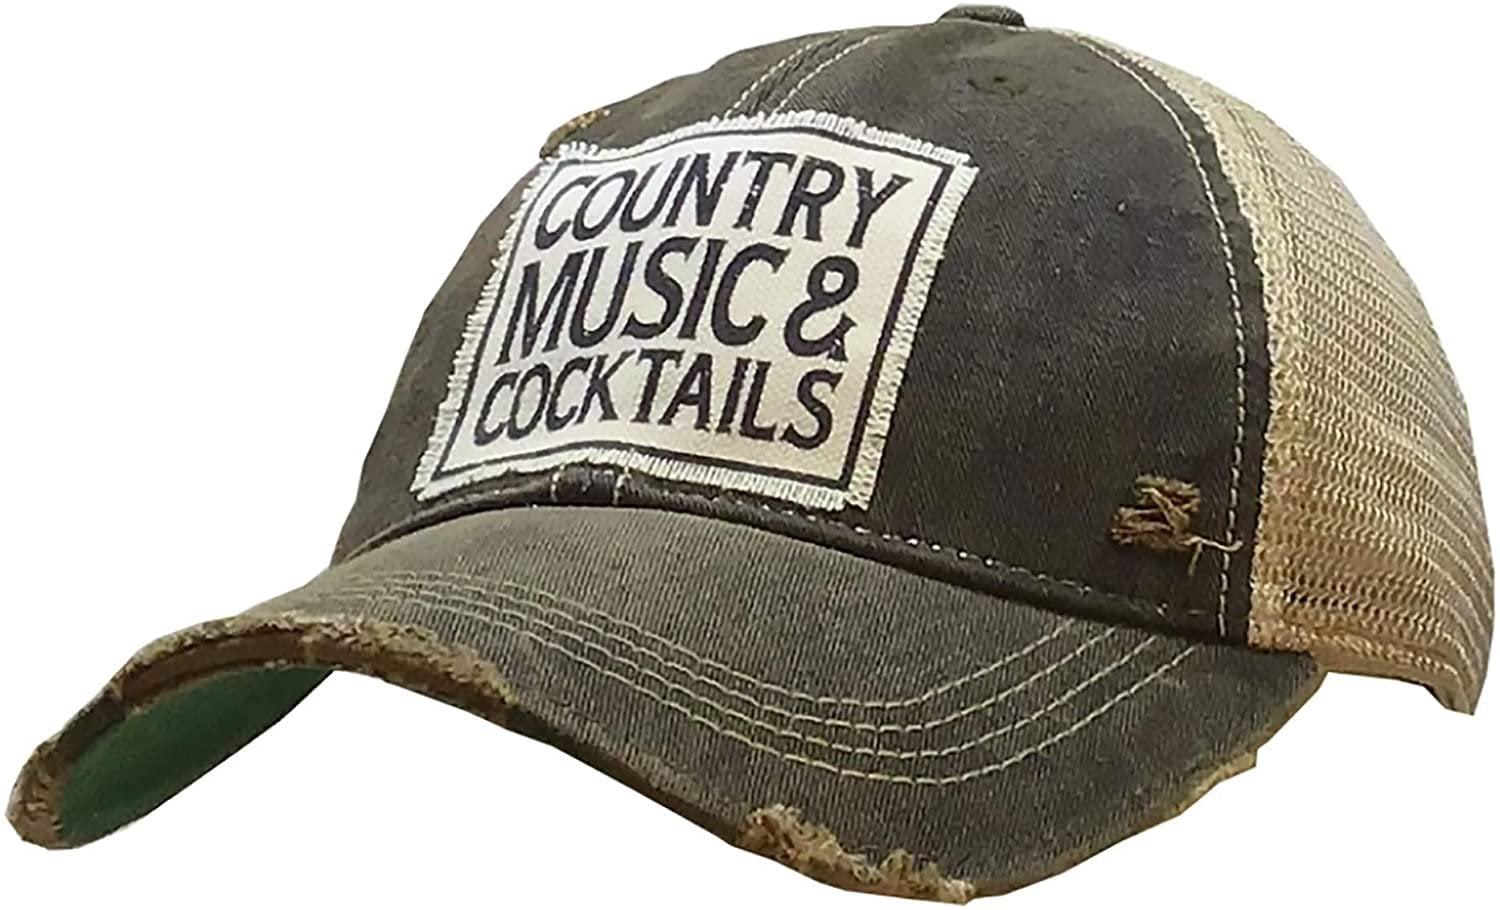 Accessories Hats & Caps Baseball & Trucker Caps Classic Baseball Cap 